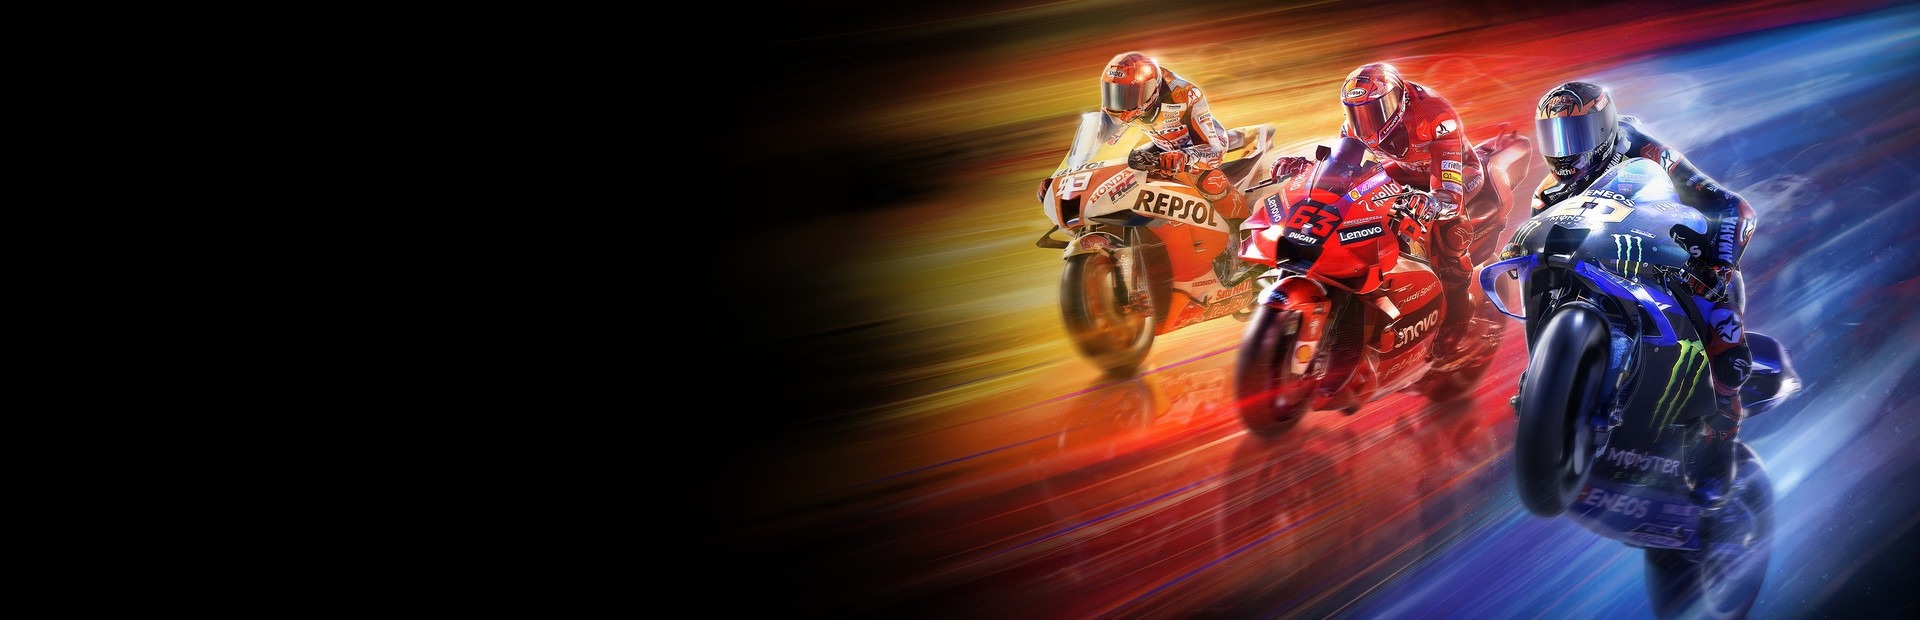 MotoGP 22 (Xbox ONE / Xbox Series X|S)